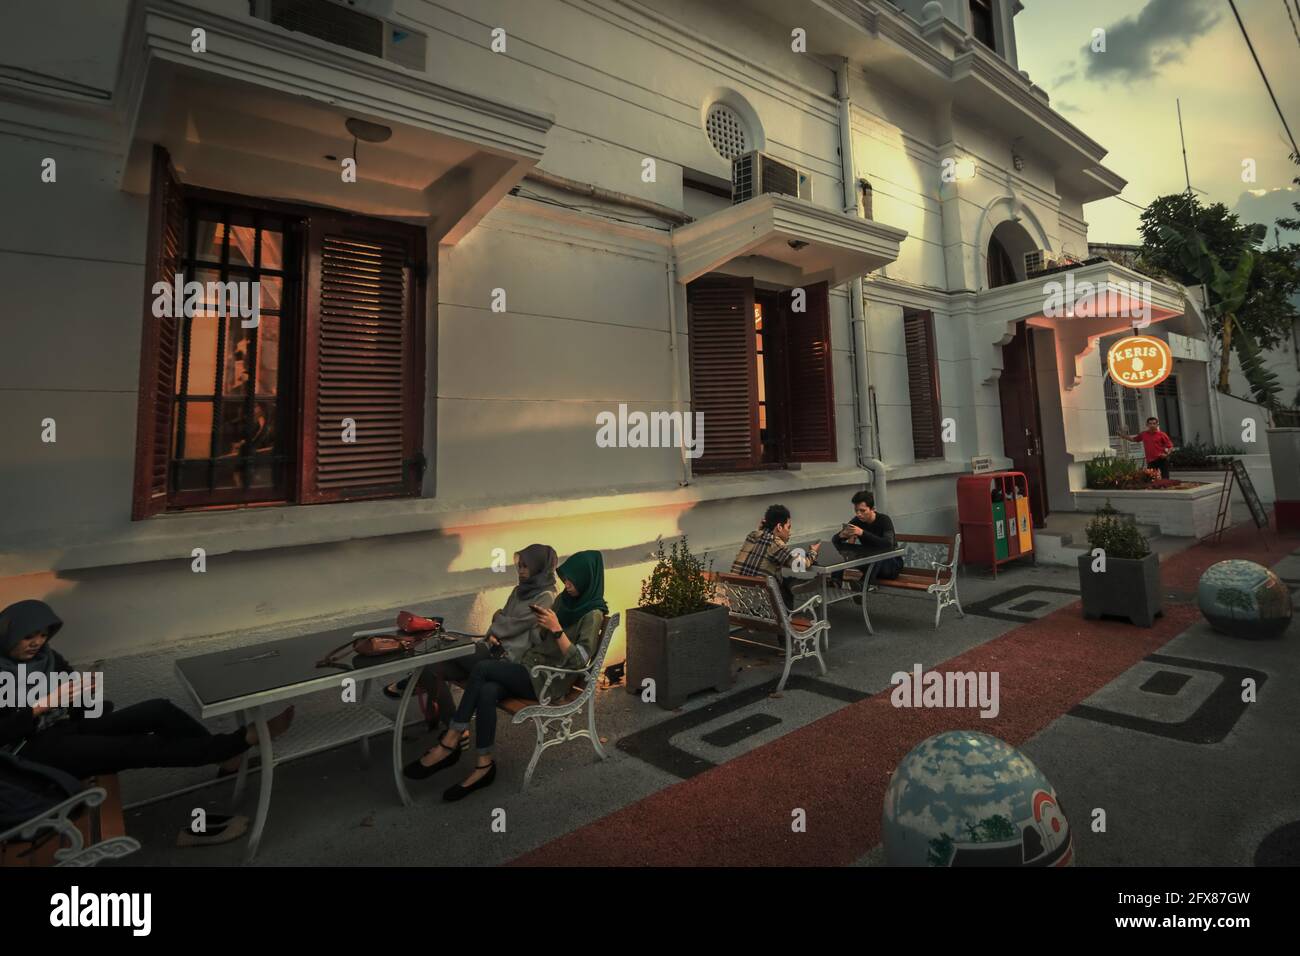 Los jóvenes que tienen tiempo libre en un café al lado de la calle en la parte antigua de la ciudad de Semarang, popularmente conocido como 'Kota Lama' (Ciudad Vieja), un patrimonio cultural que se desarrolla en parte durante la época colonial. Semarang, Java Central, Indonesia. Foto de stock